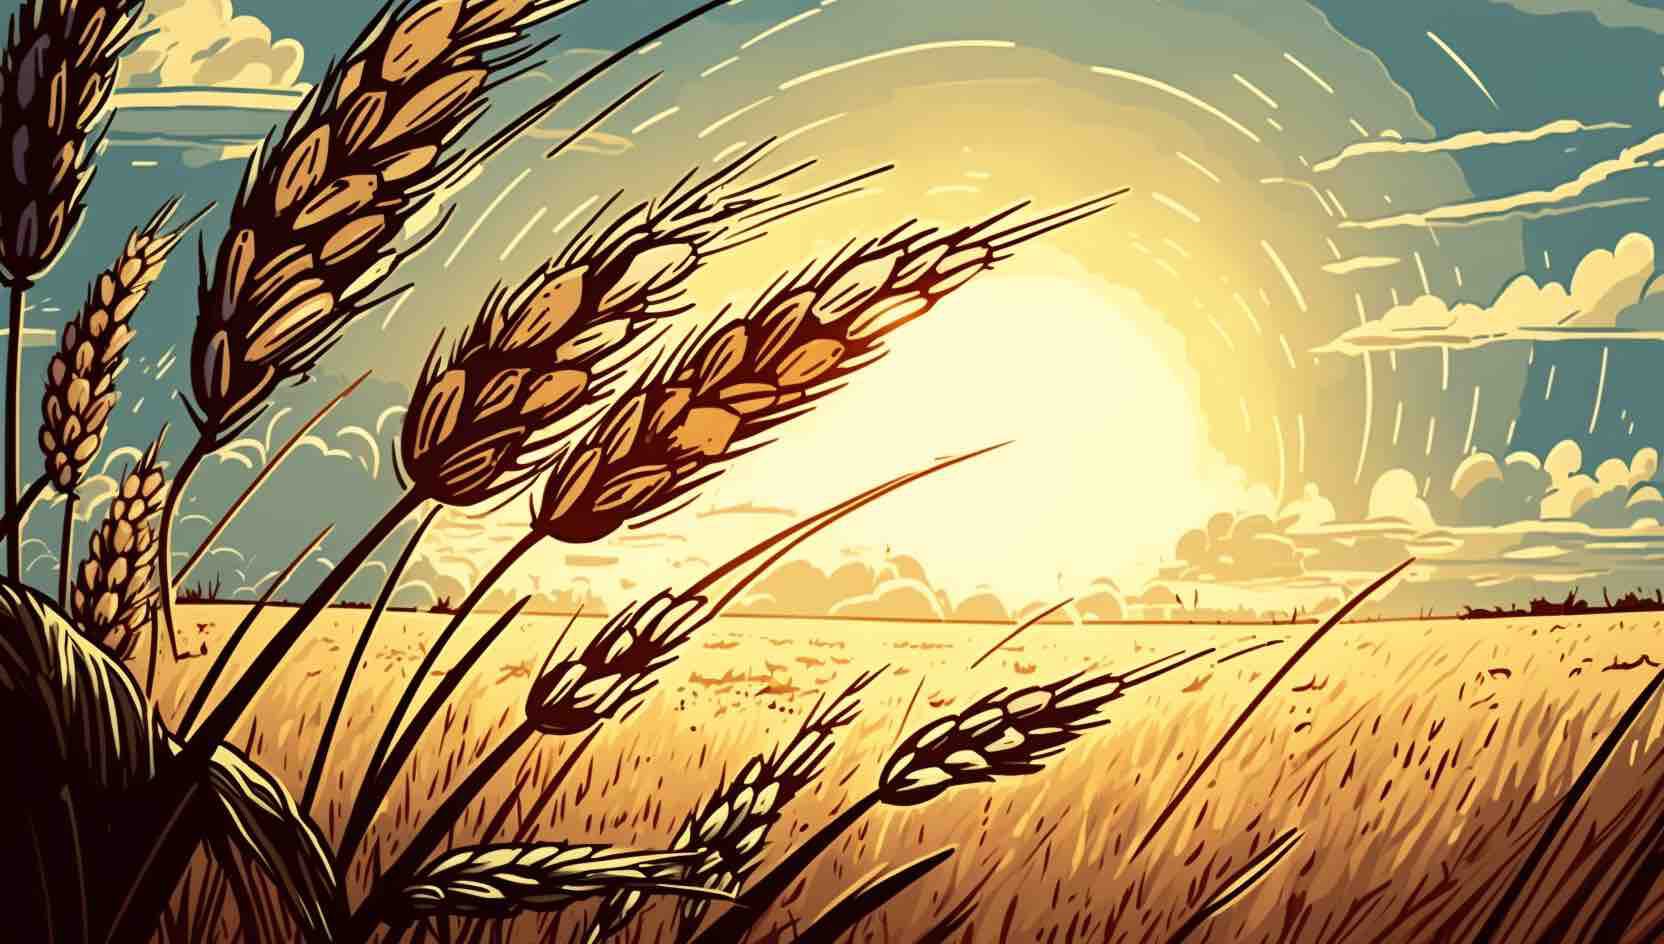 지속 가능성의 씨앗을 뿌리다: 집약적 농업과 광범위한 (곡물) 농업 살펴보기